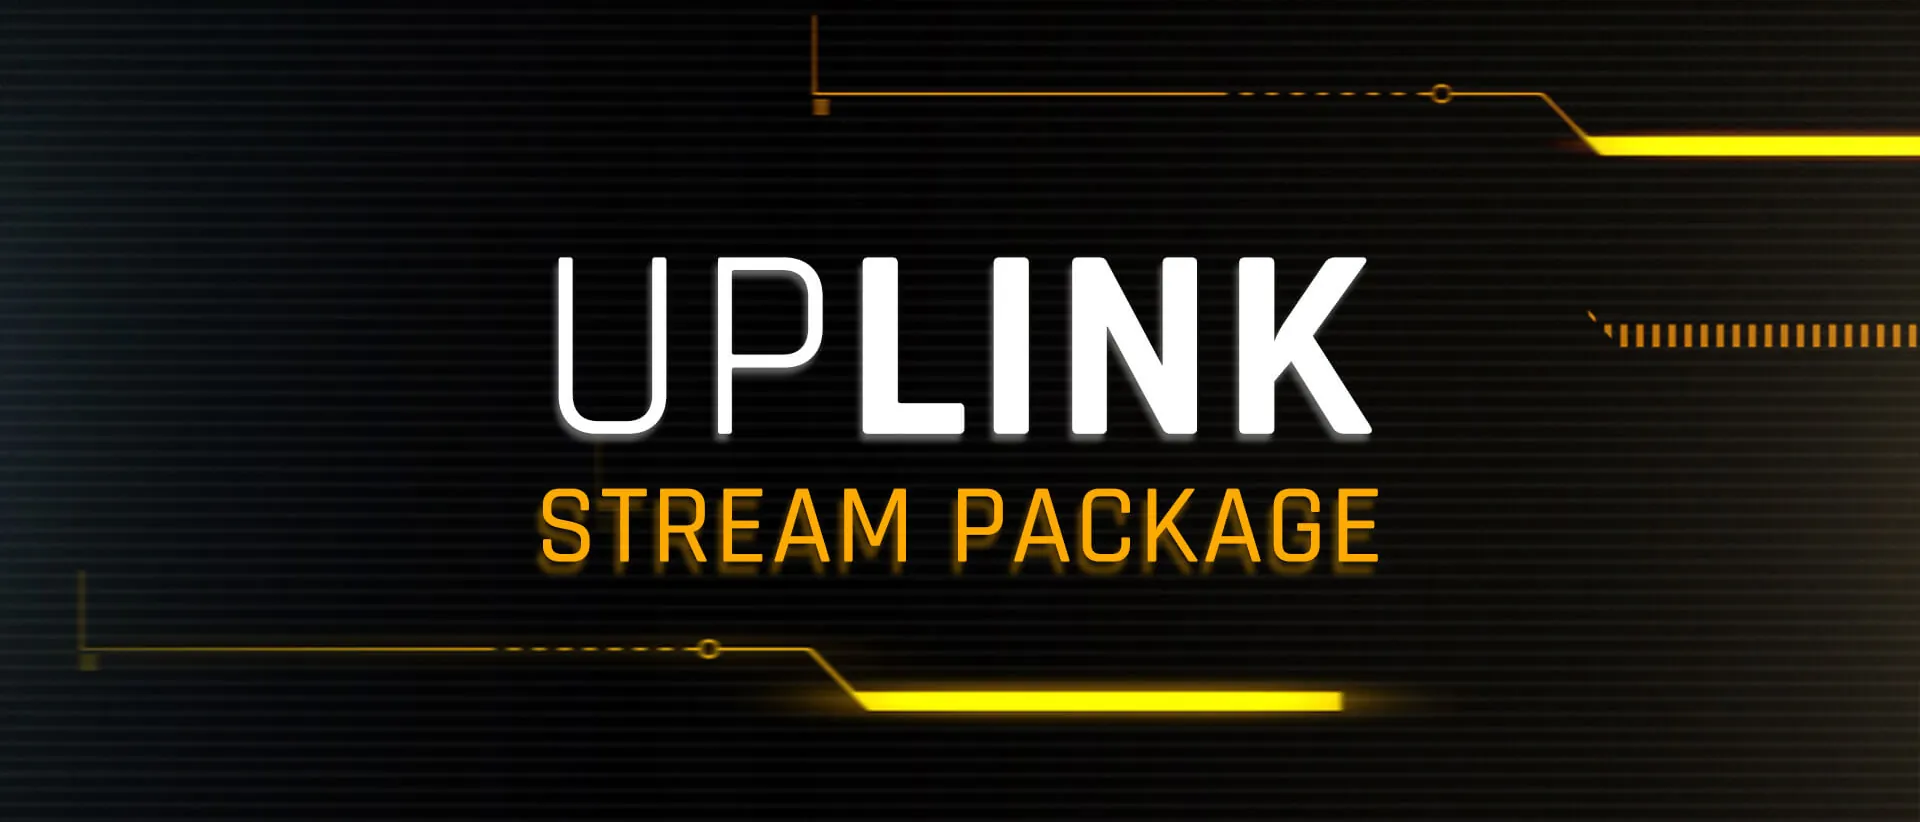 Uplink Stream Package